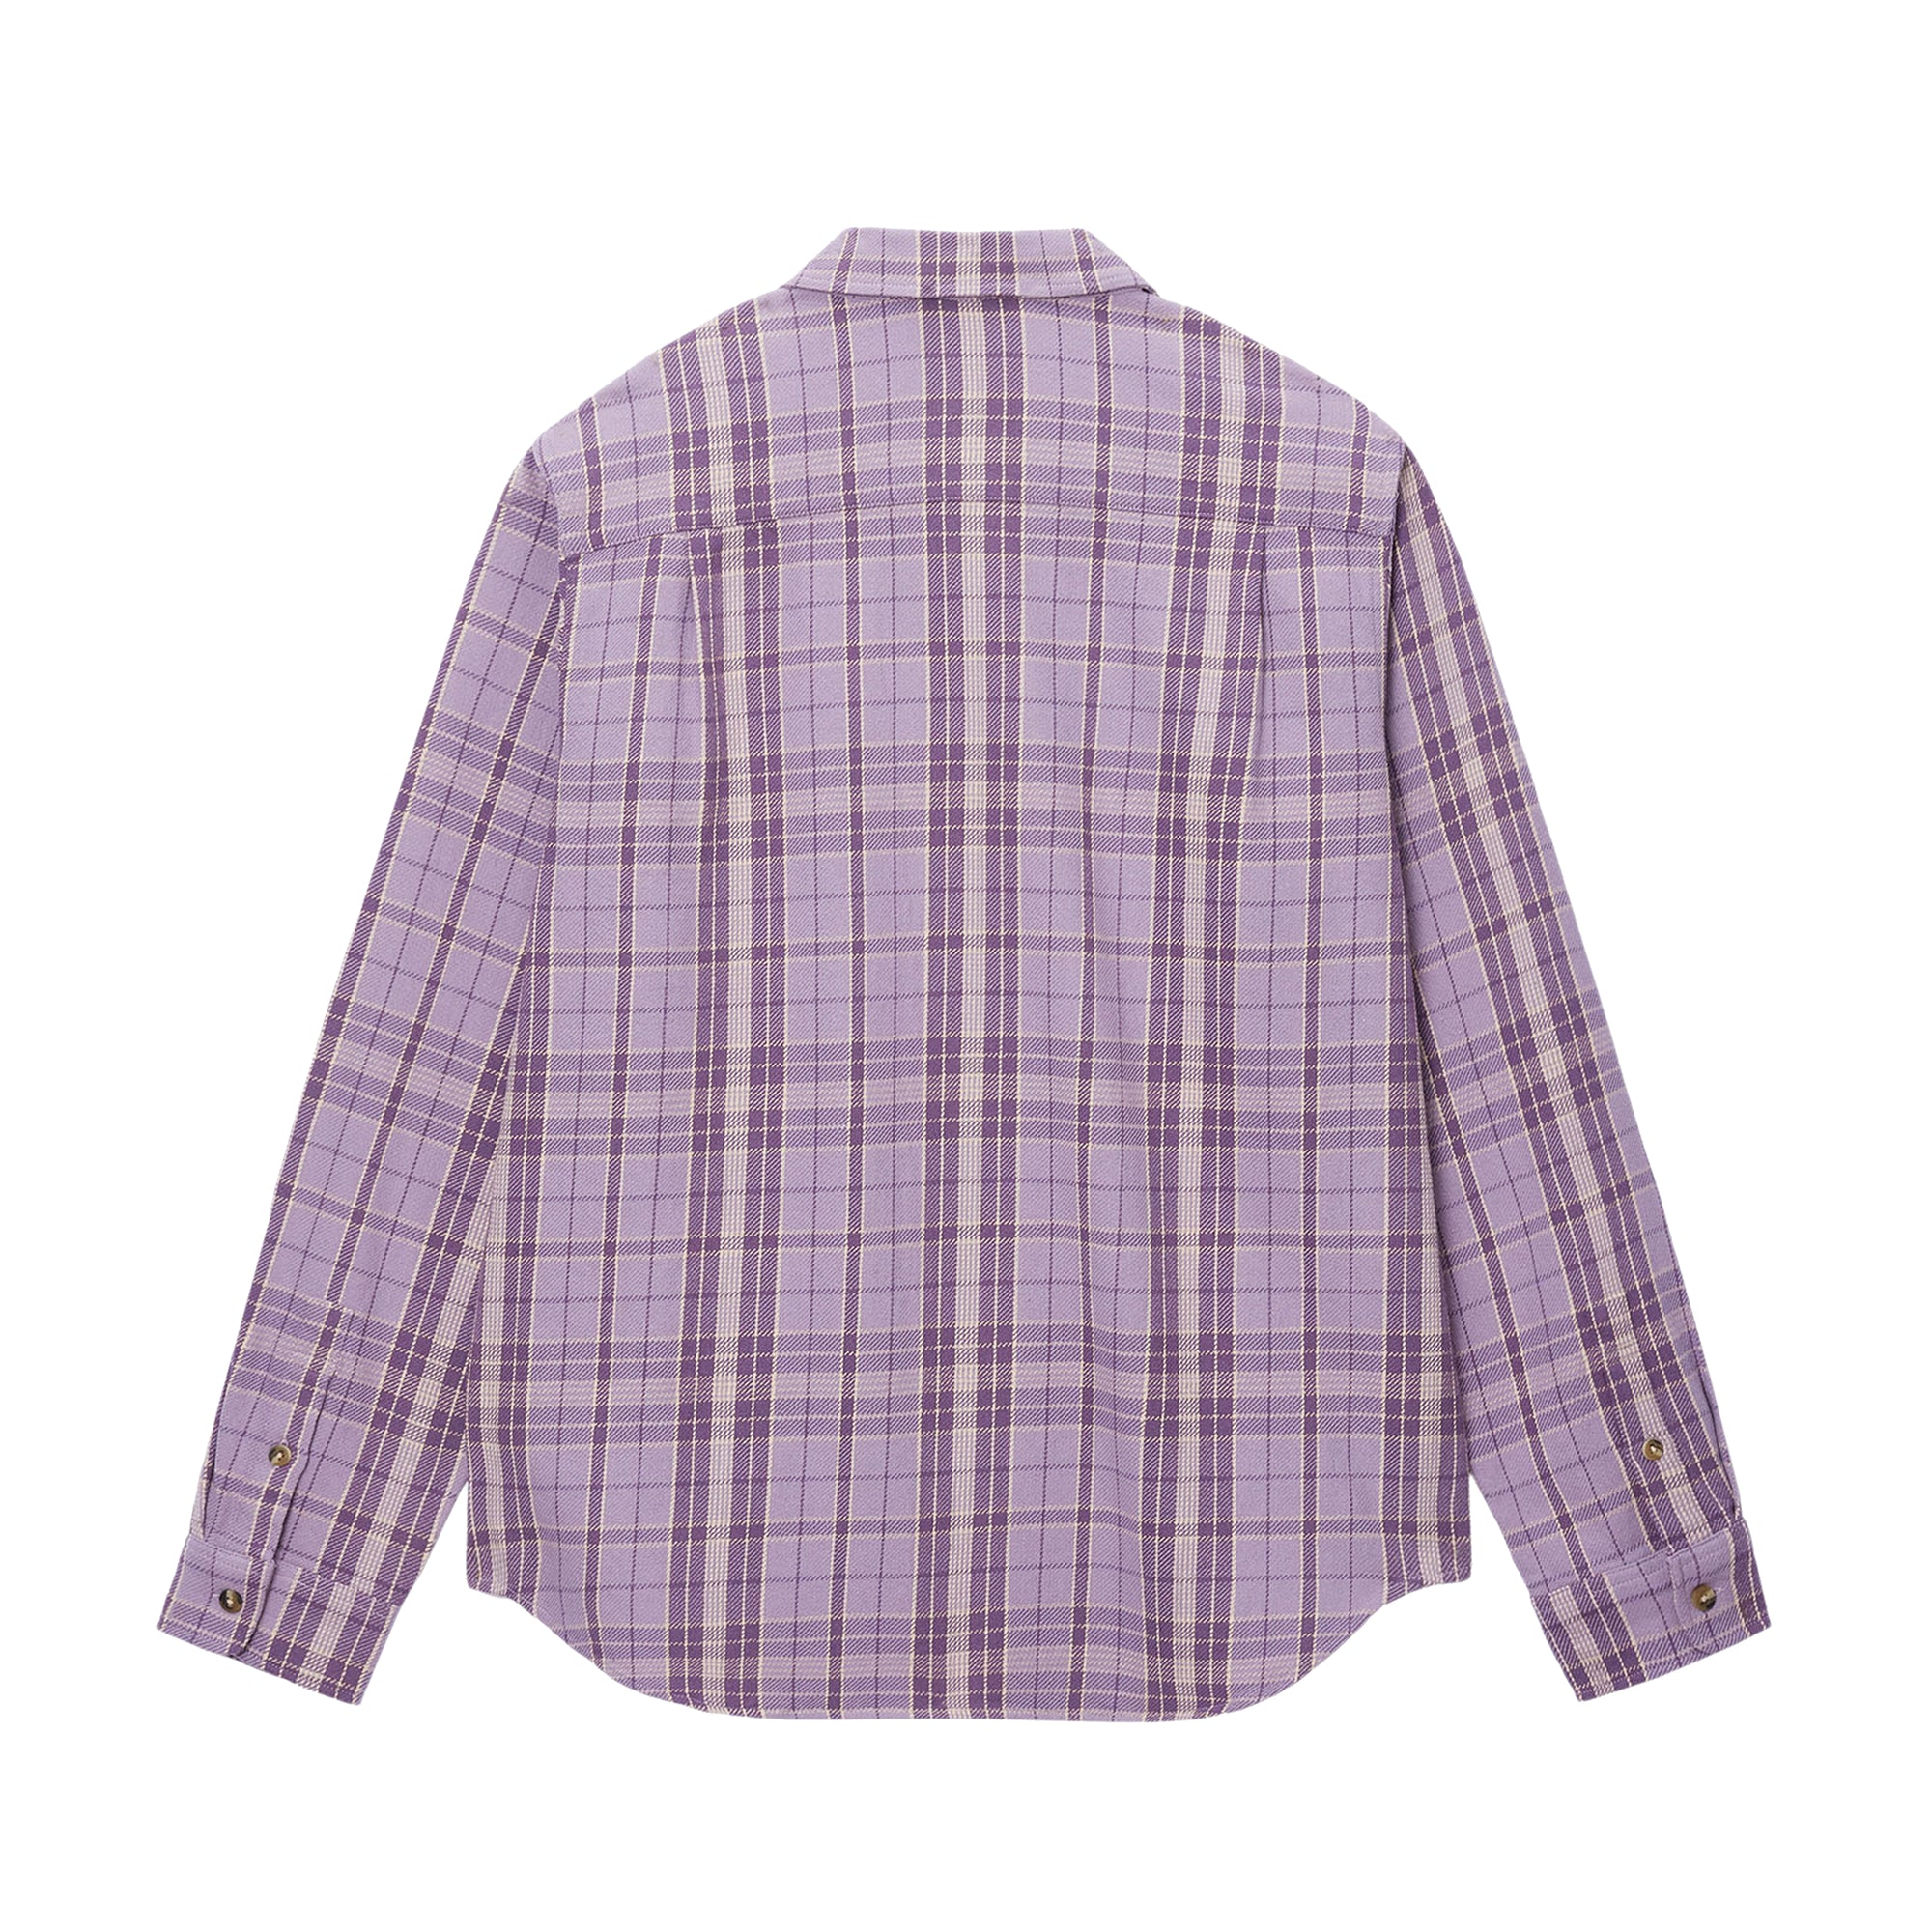 Stüssy - Men's Stones Plaid Shirt - (Lavender) view 2